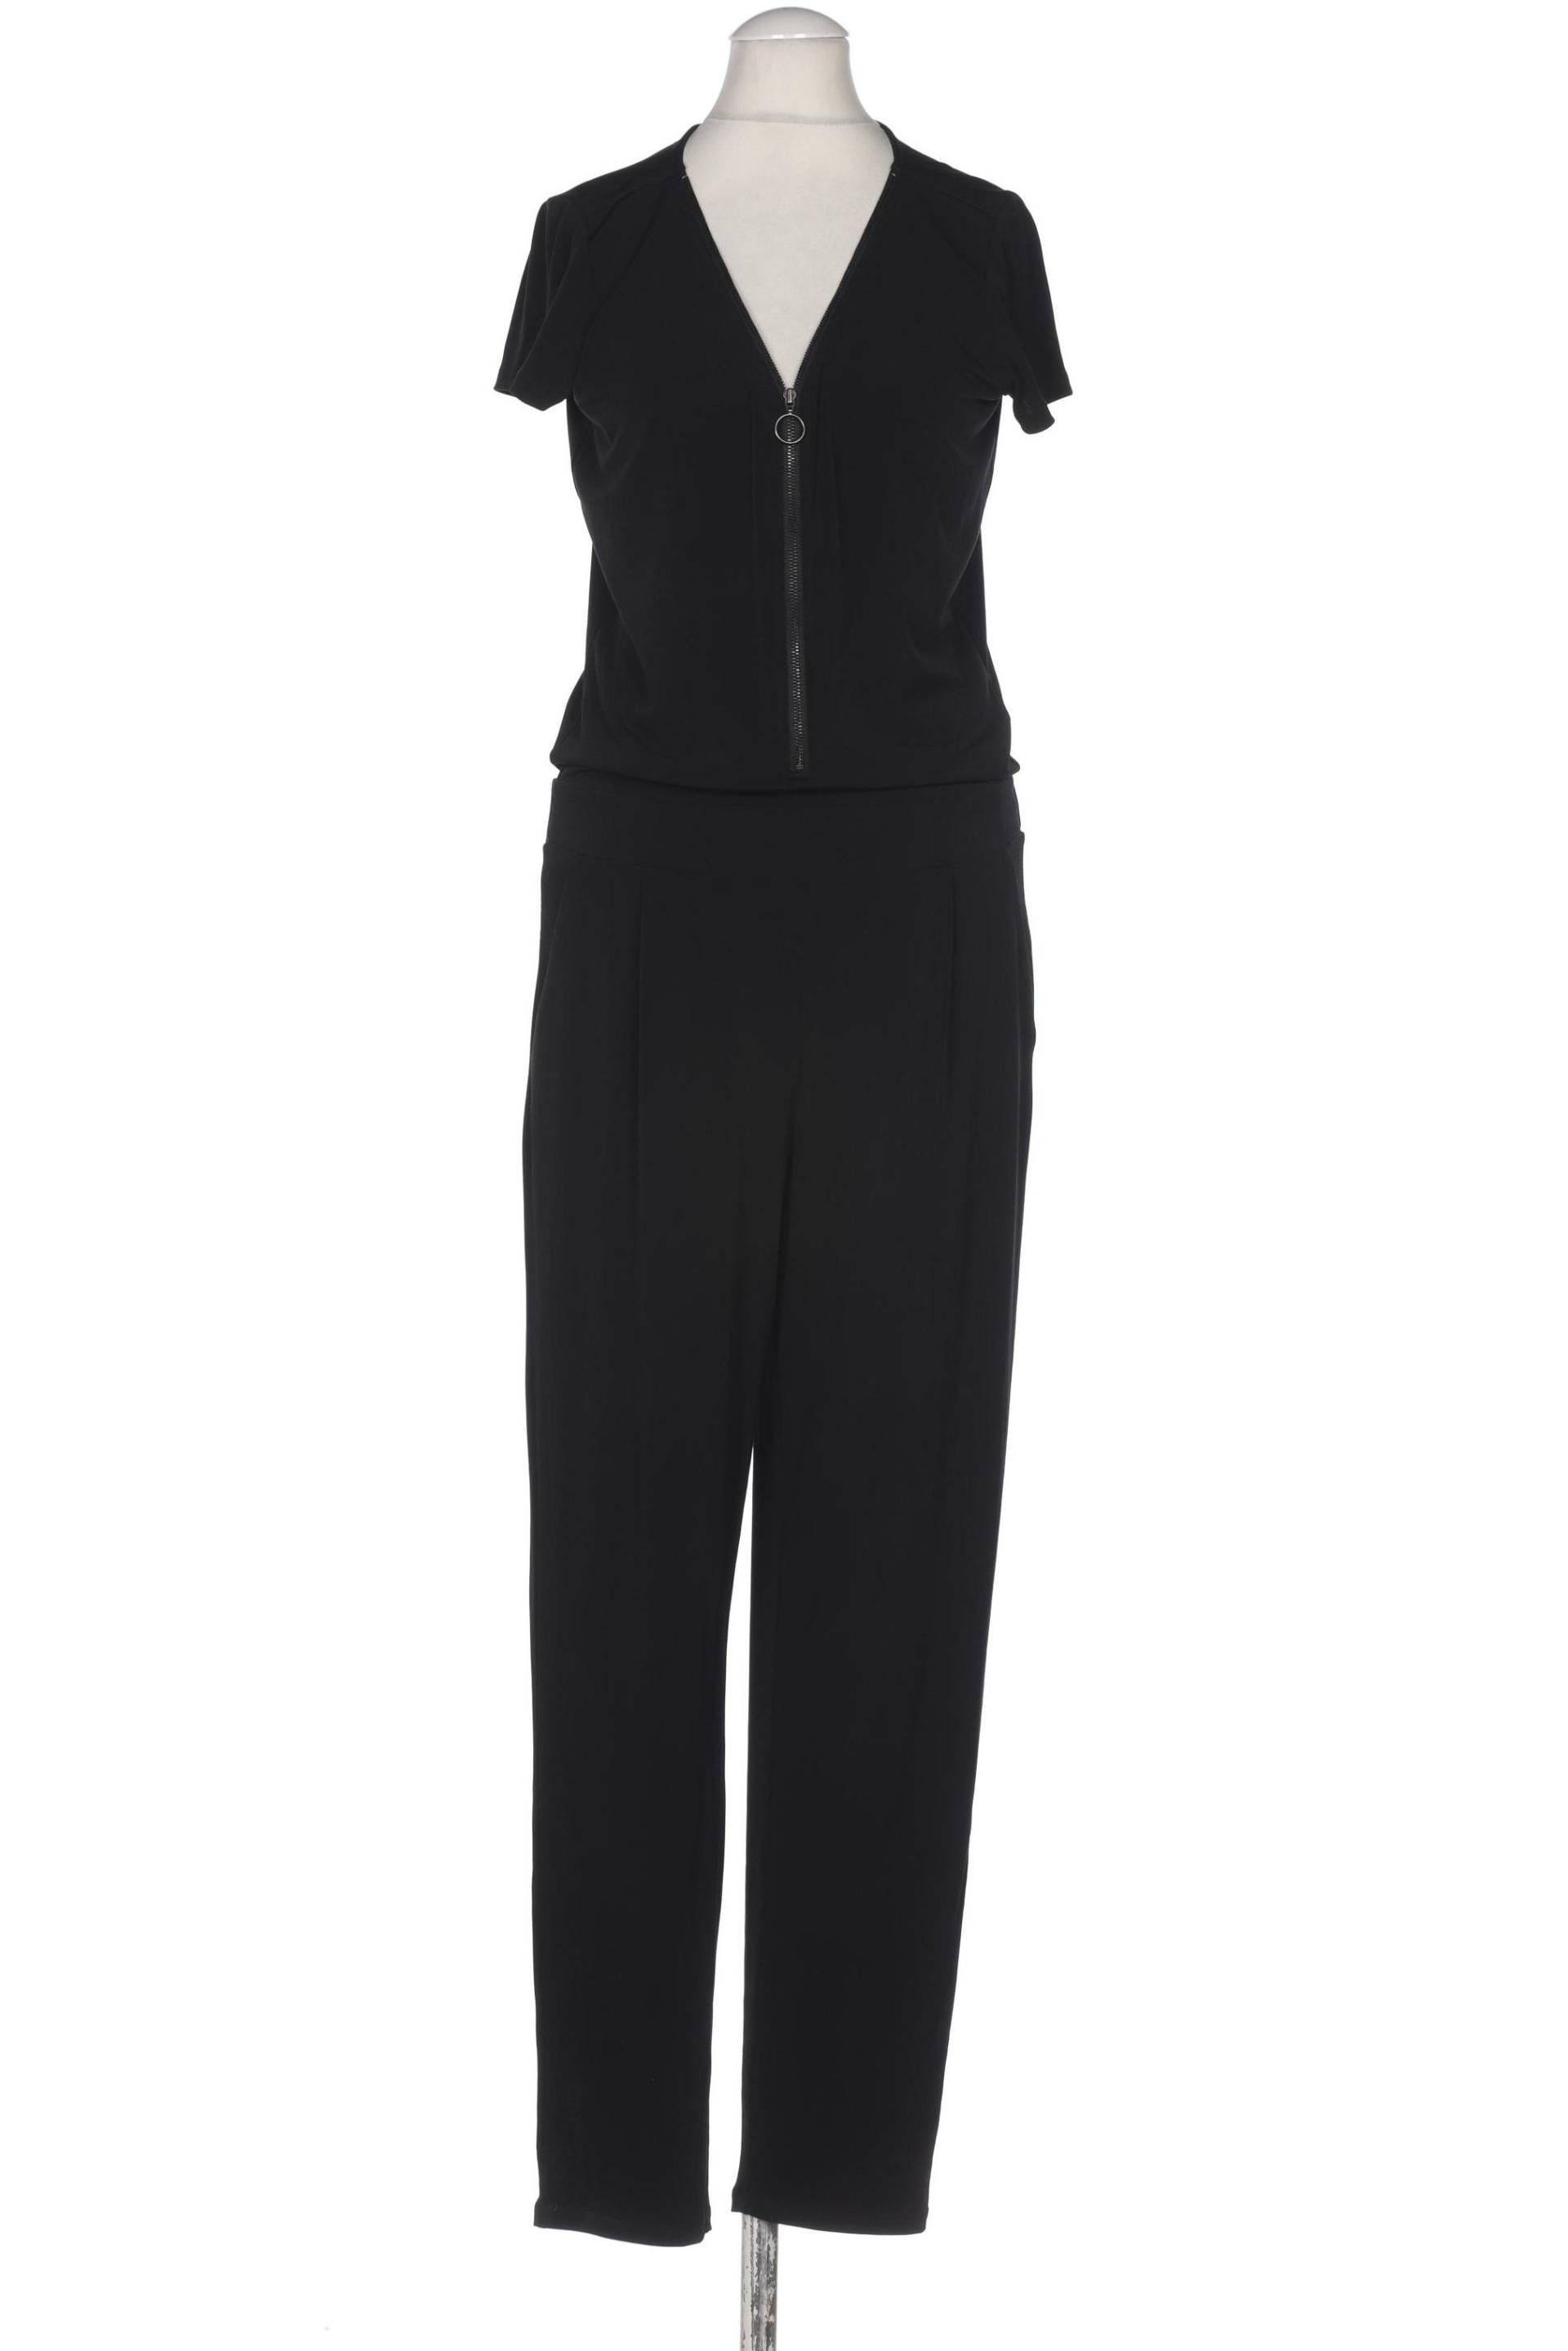 Comma Damen Jumpsuit/Overall, schwarz, Gr. 34 von comma